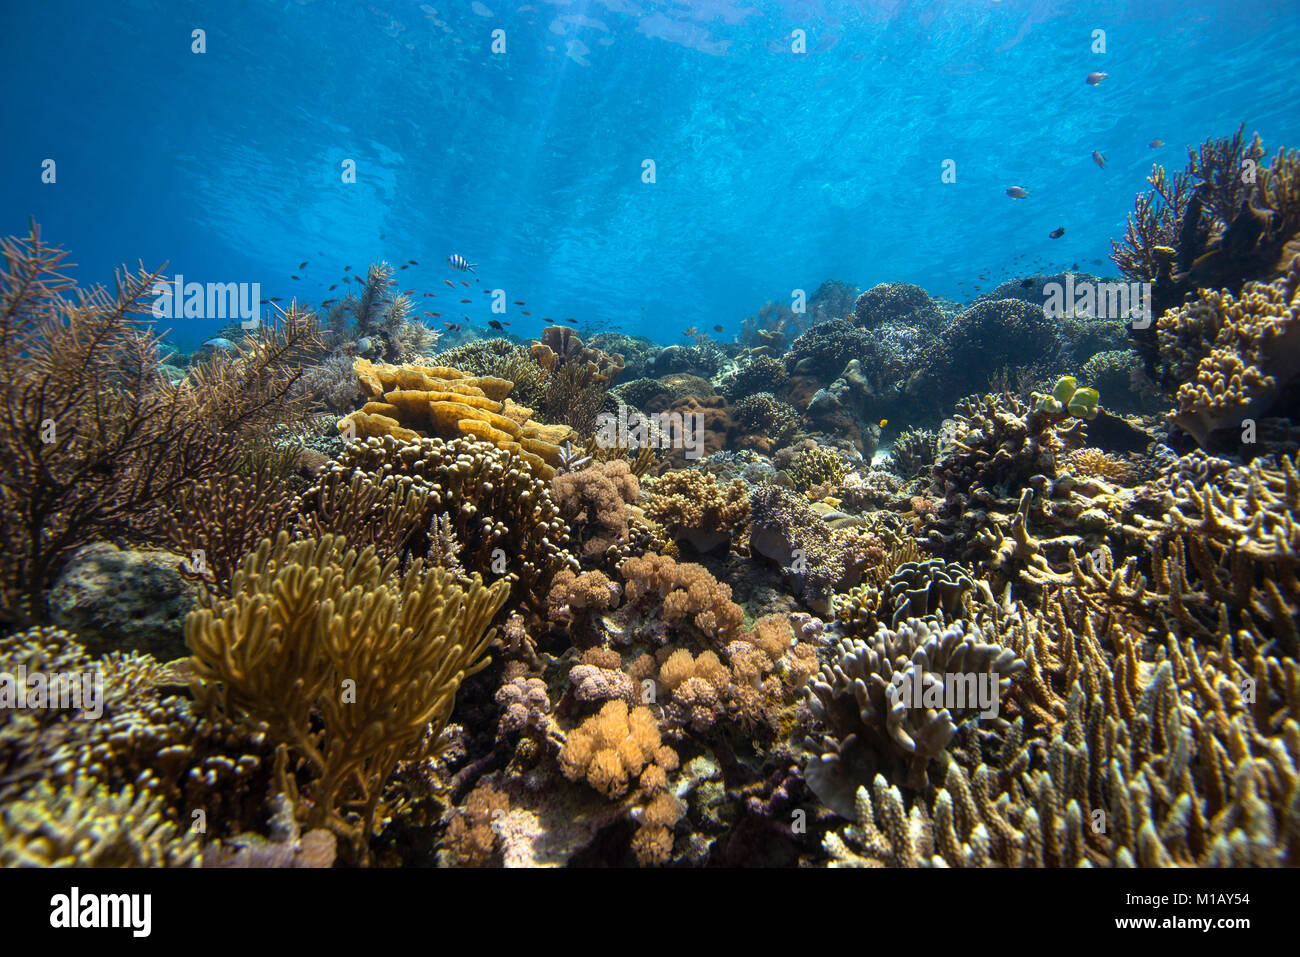 Prístino y hermoso jardín de coral en aguas poco profundas, agua tropical, con muchos corales duros y blandos, y algunos peces de arrecife, en el Parque Nacional de Komodo (Indonesia) Foto de stock